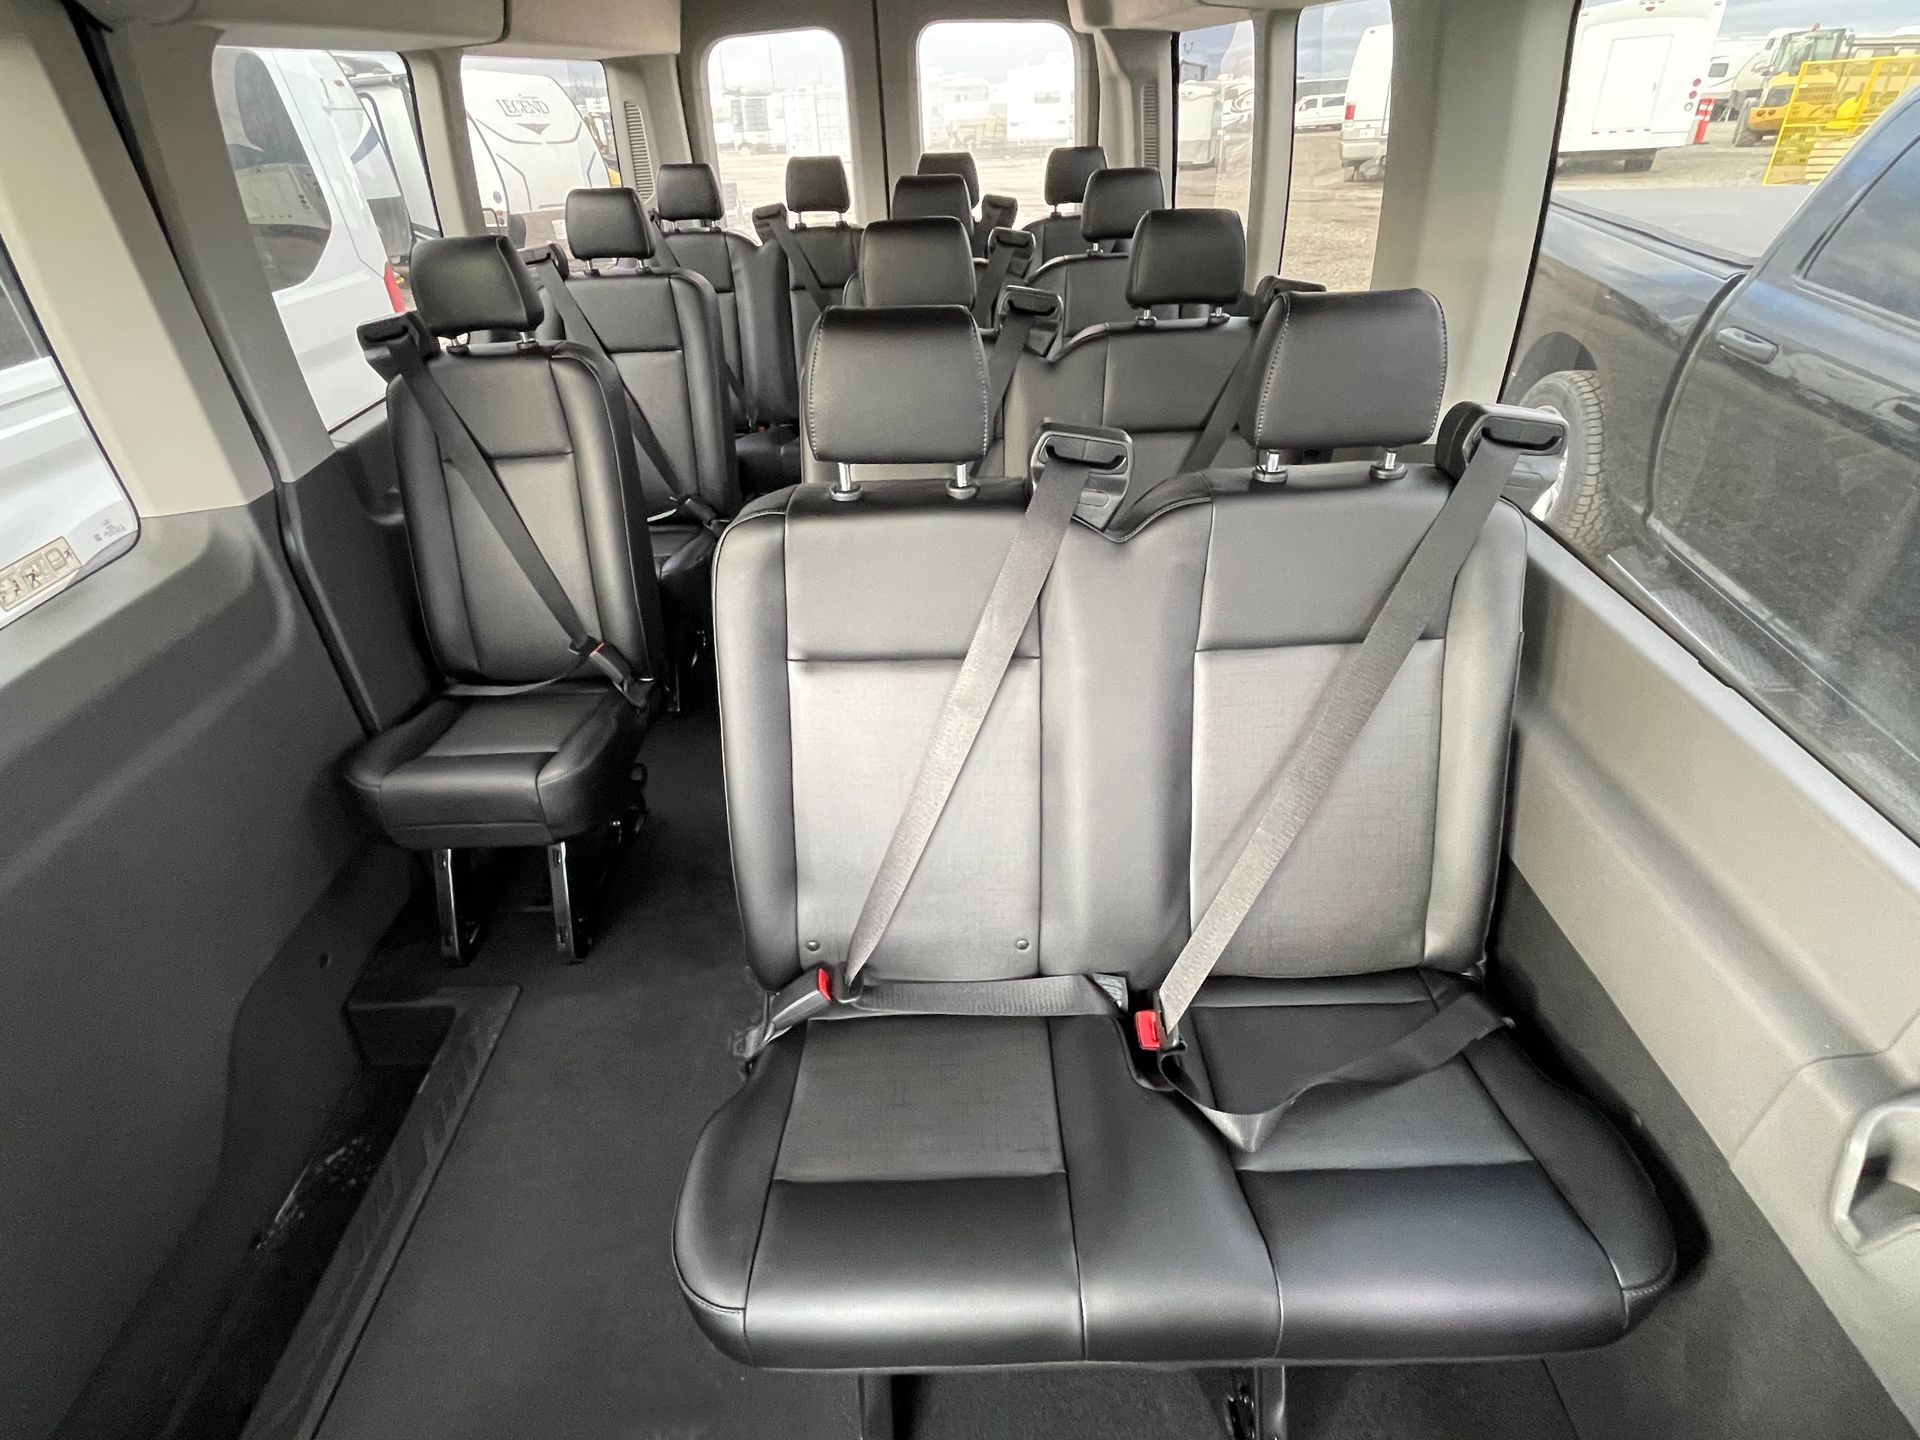 13-passenger-transit-shuttle-bus-interior-seating